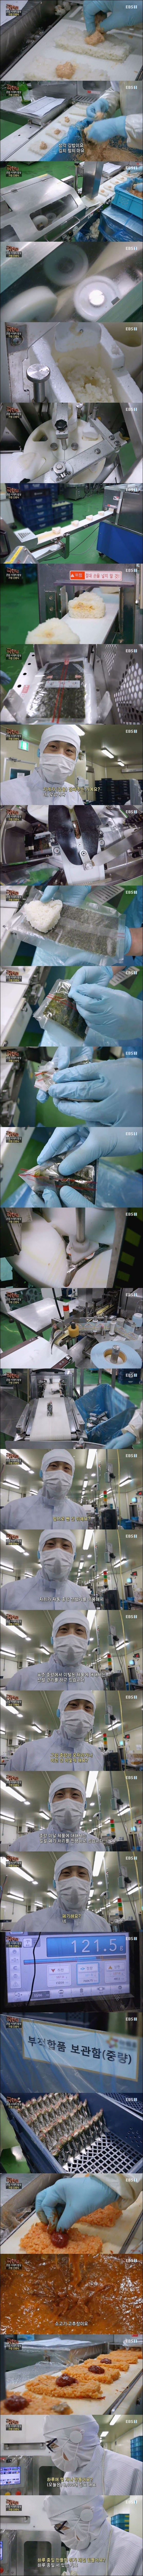 삼각김밥 제조 과정